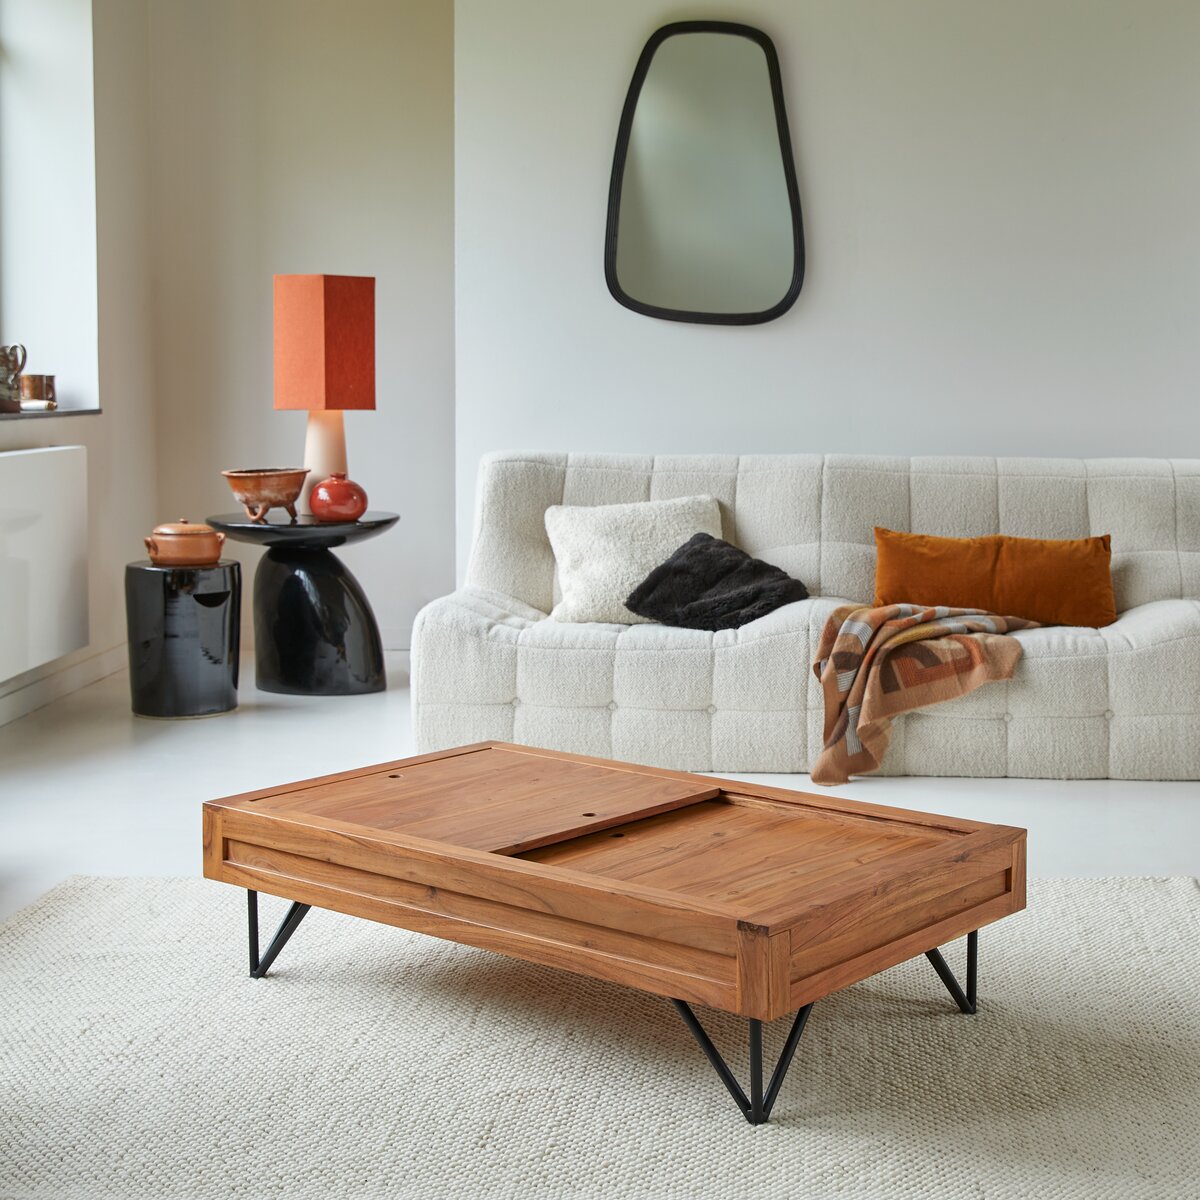 couchtisch aus akazienholz – 120 × 70 cm – wohnzimmermöbel – tikamoon